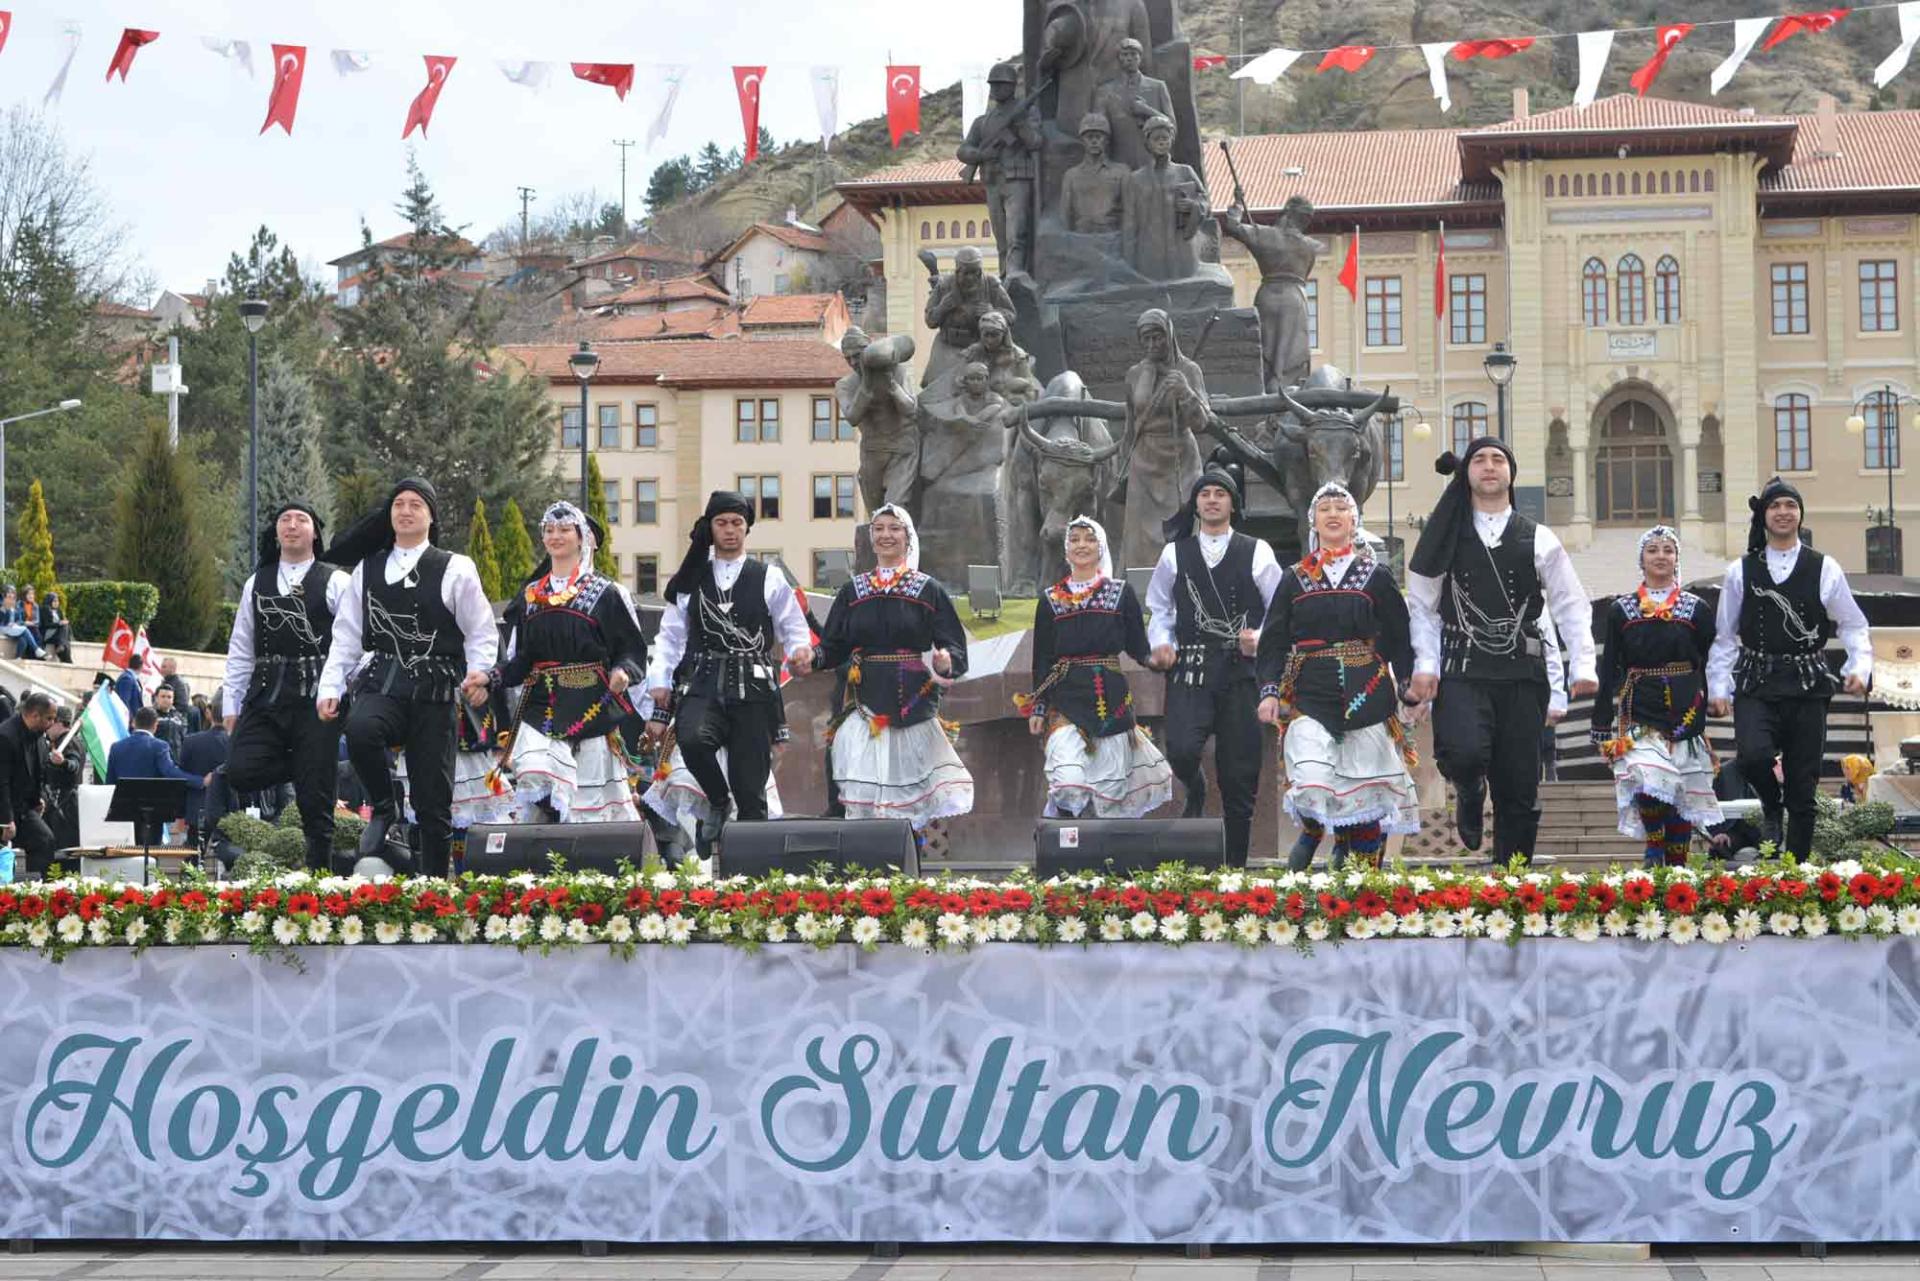 Türk Dünyası Kültür Başkenti Kastamonu’ya Muhteşem Açılış